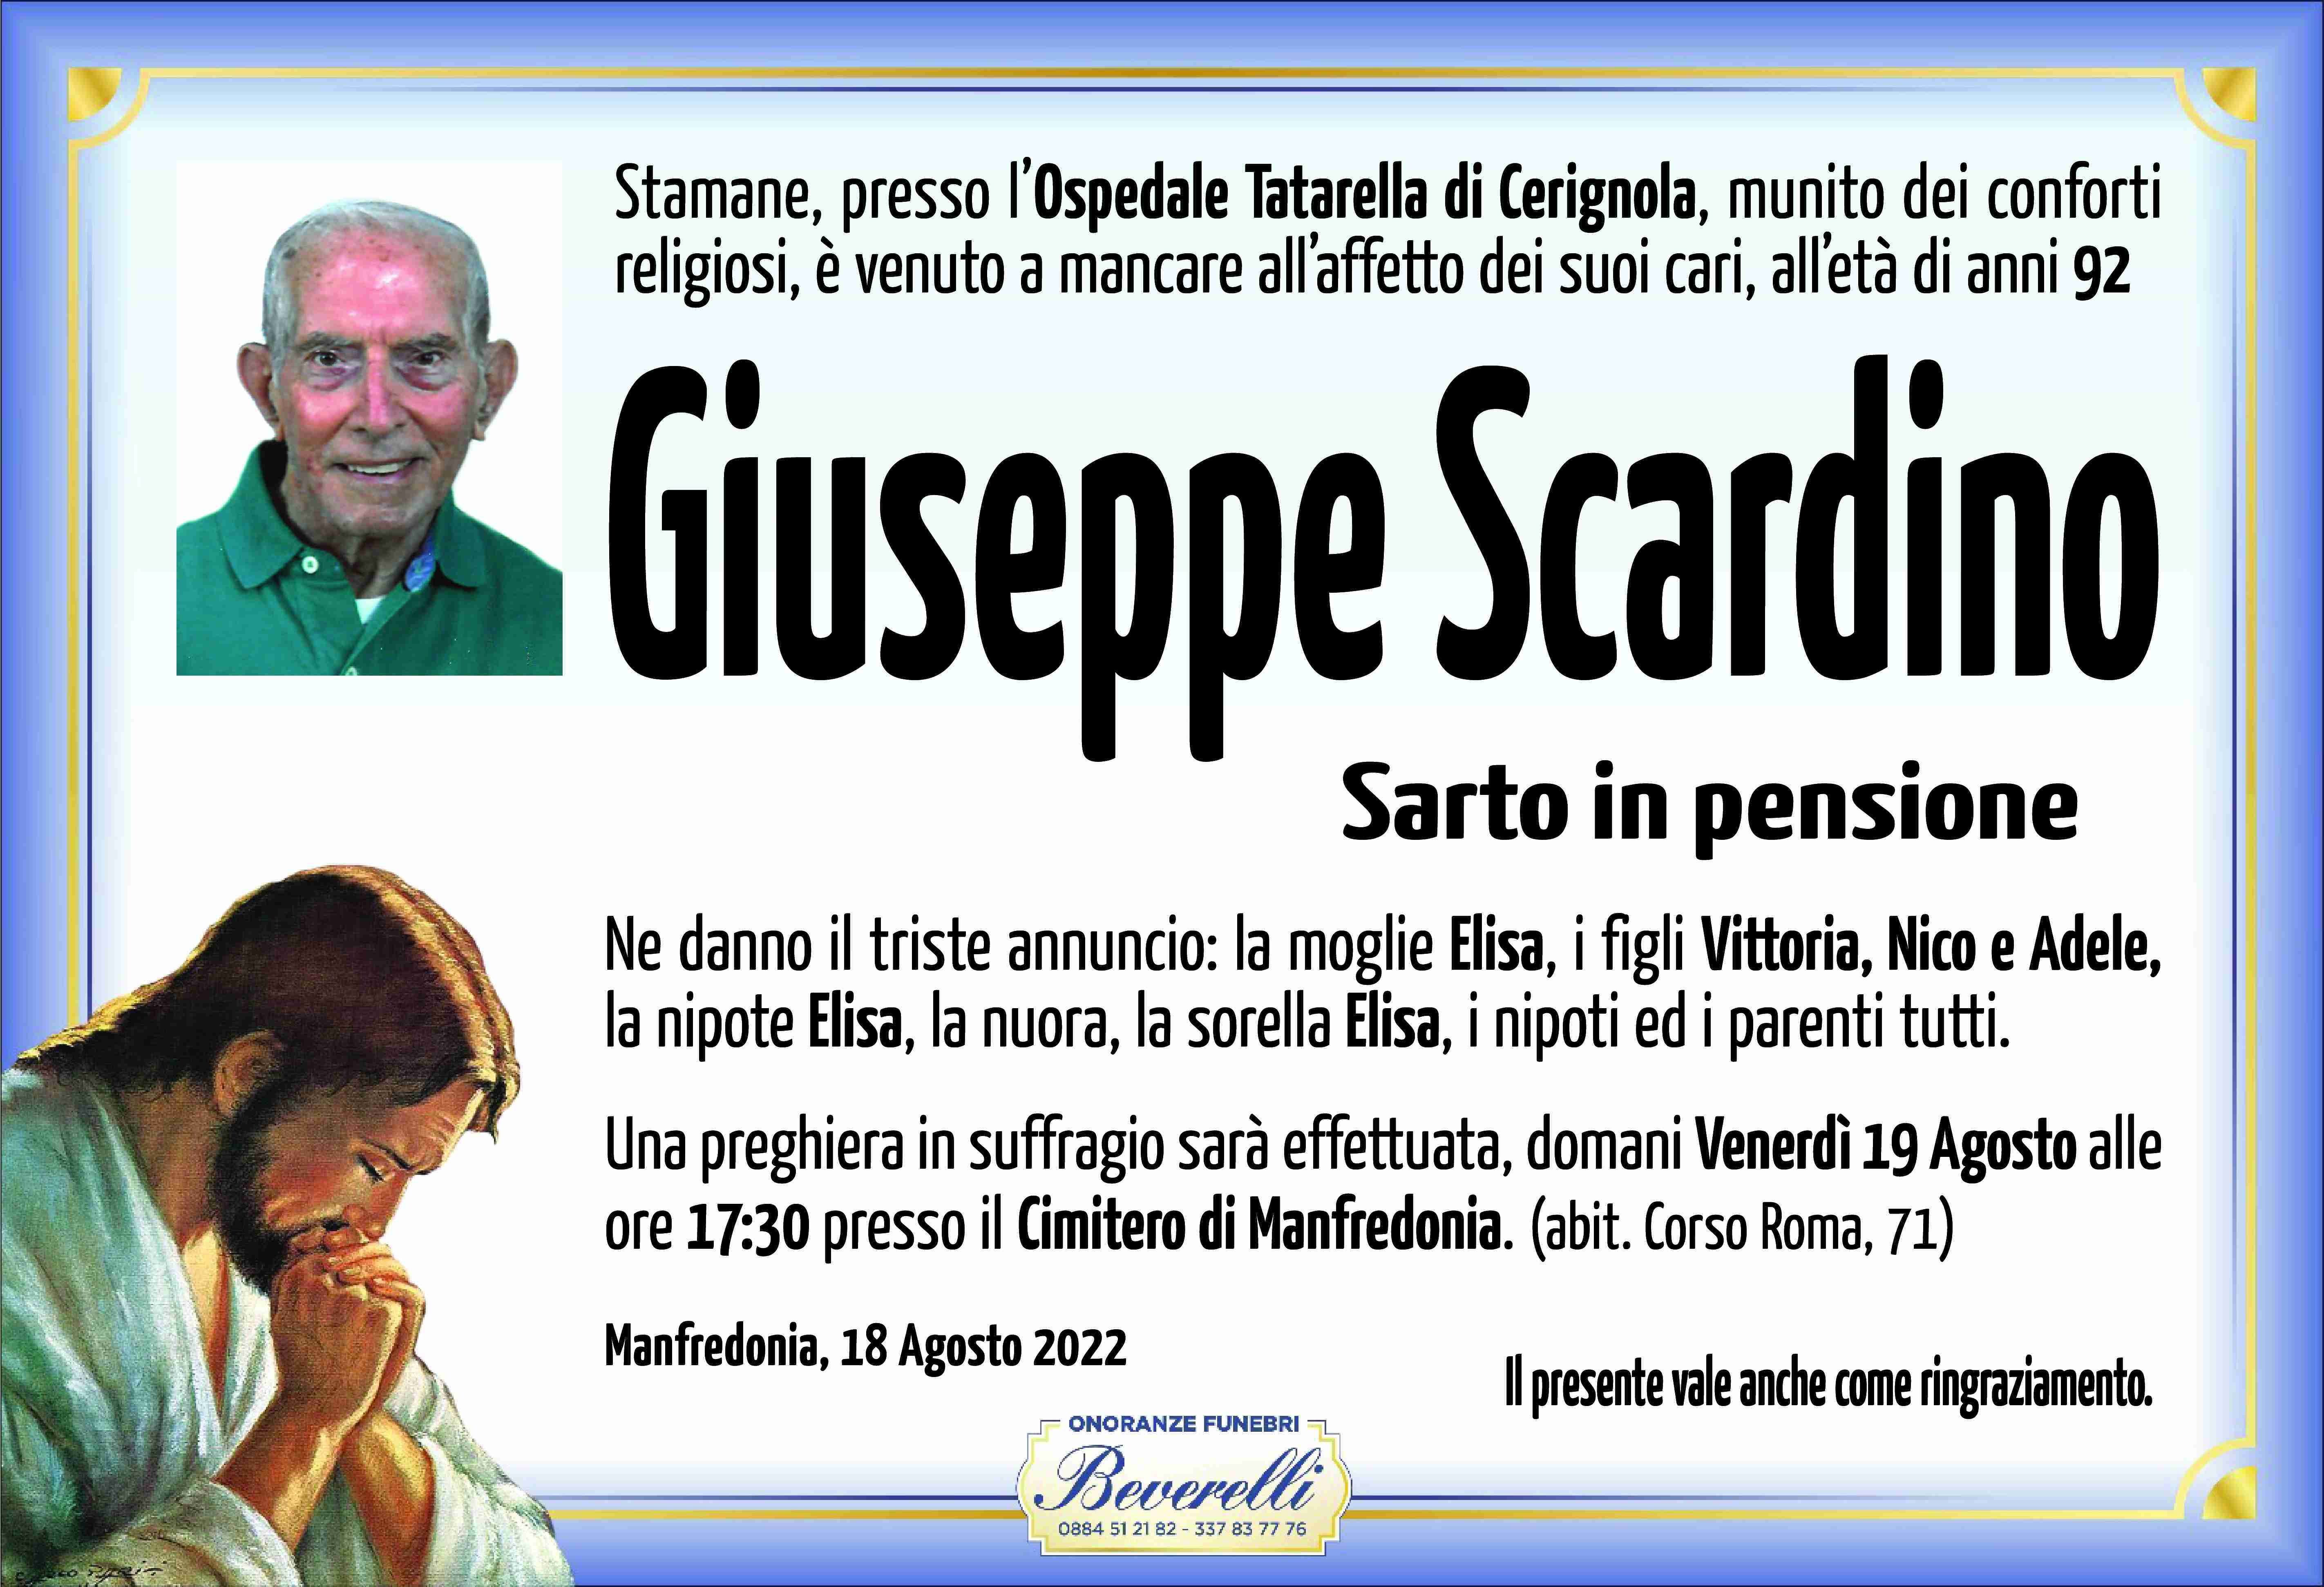 Giuseppe Scardino